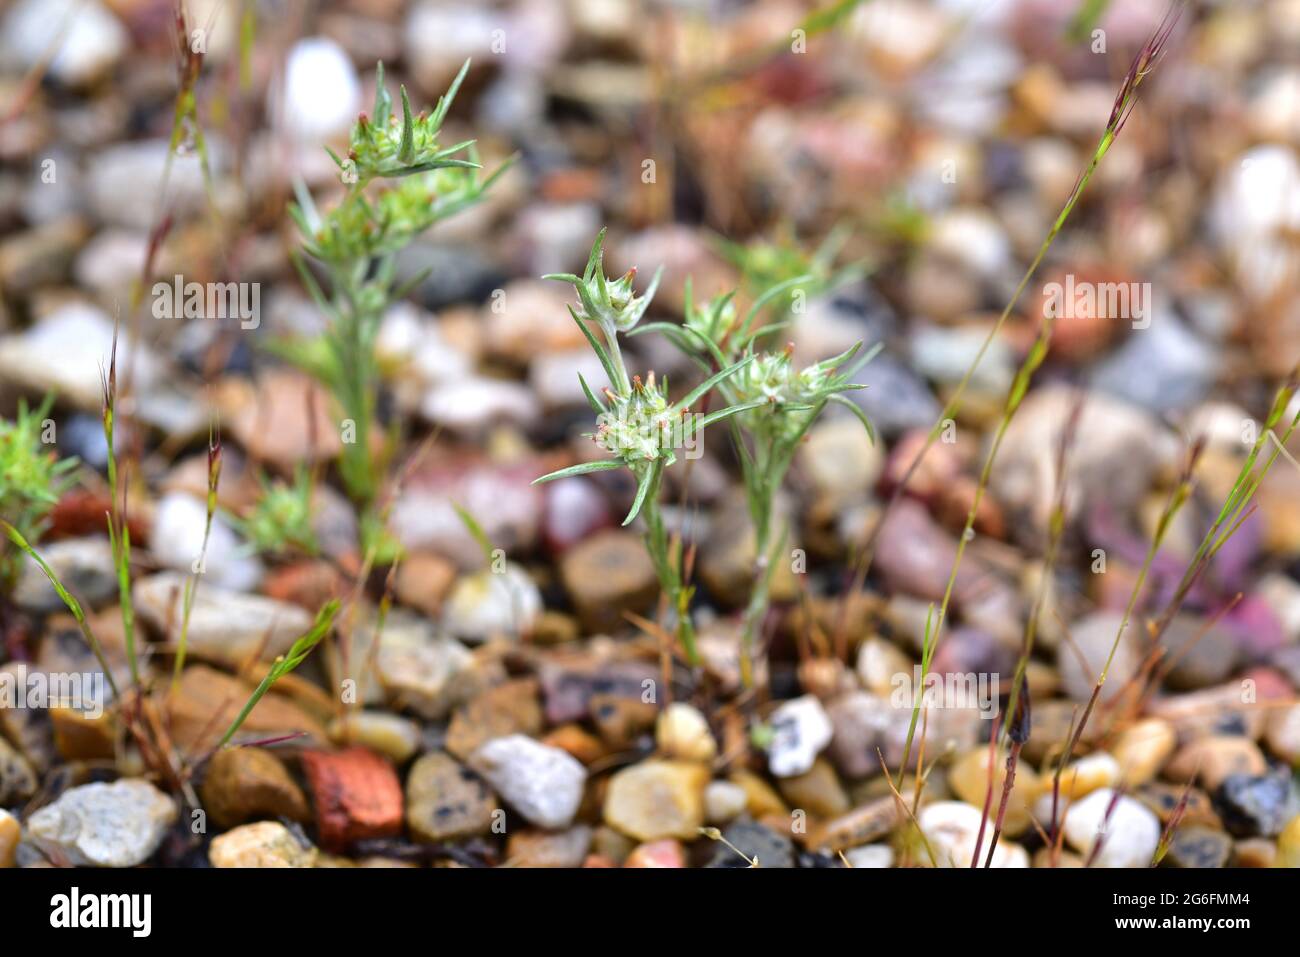 La algodonosa de hoja ancha (Filago pyramidata) es una hierba anual nativa de la cuenca mediterránea y de Europa central. Esta foto fue tomada en Sierra de la Foto de stock